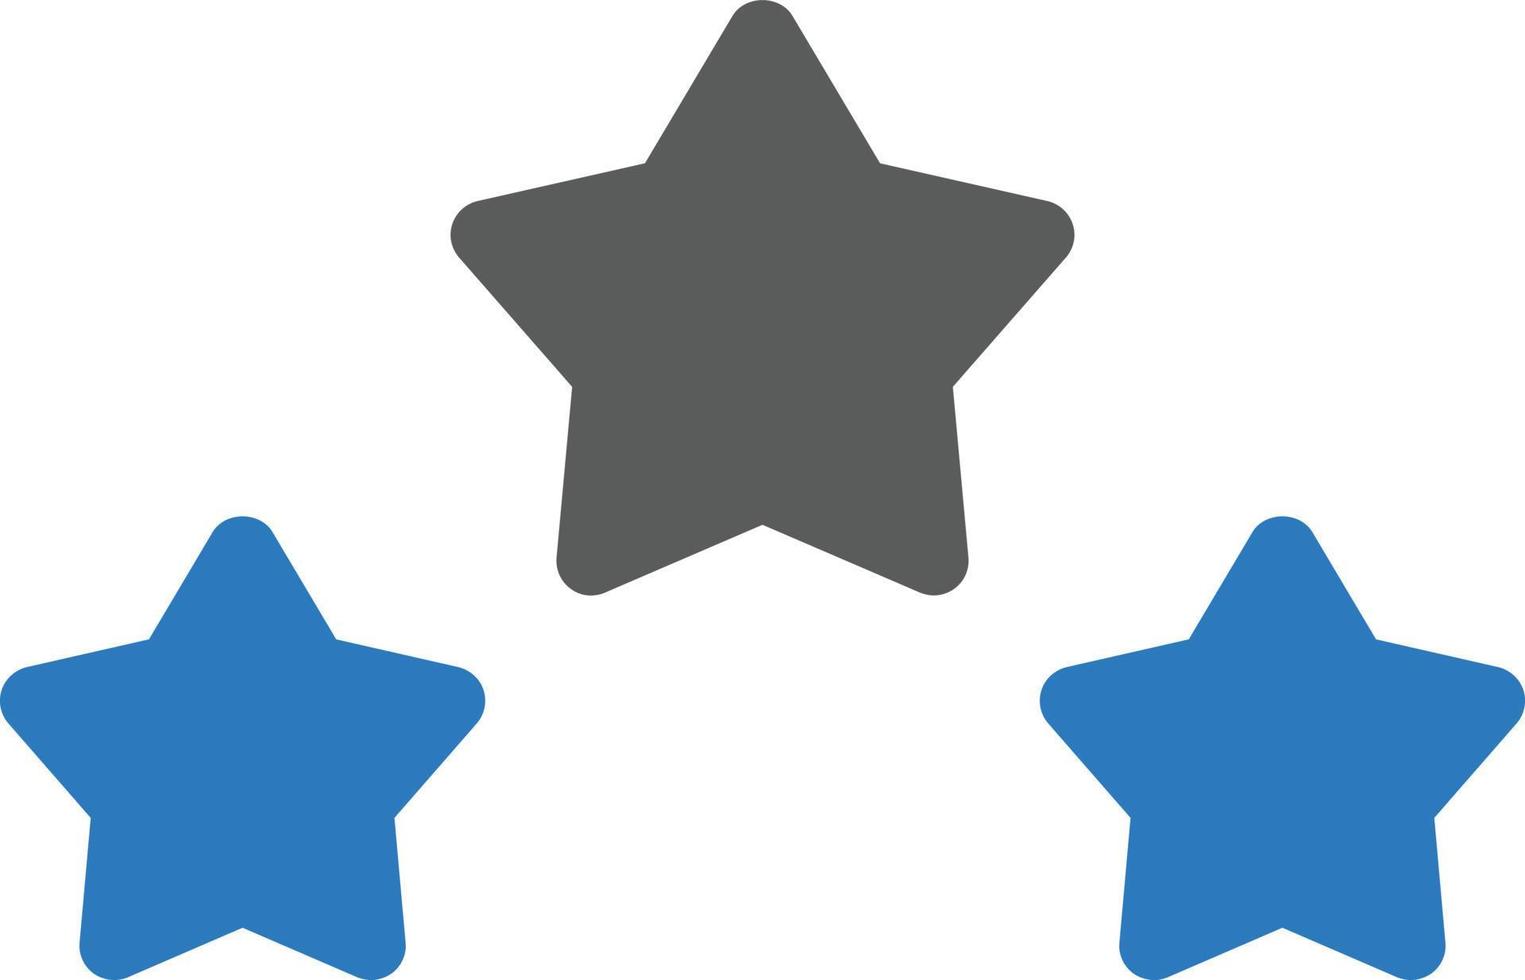 stelle illustrazione vettoriale su uno sfondo simboli di qualità premium. icone vettoriali per il concetto e la progettazione grafica.